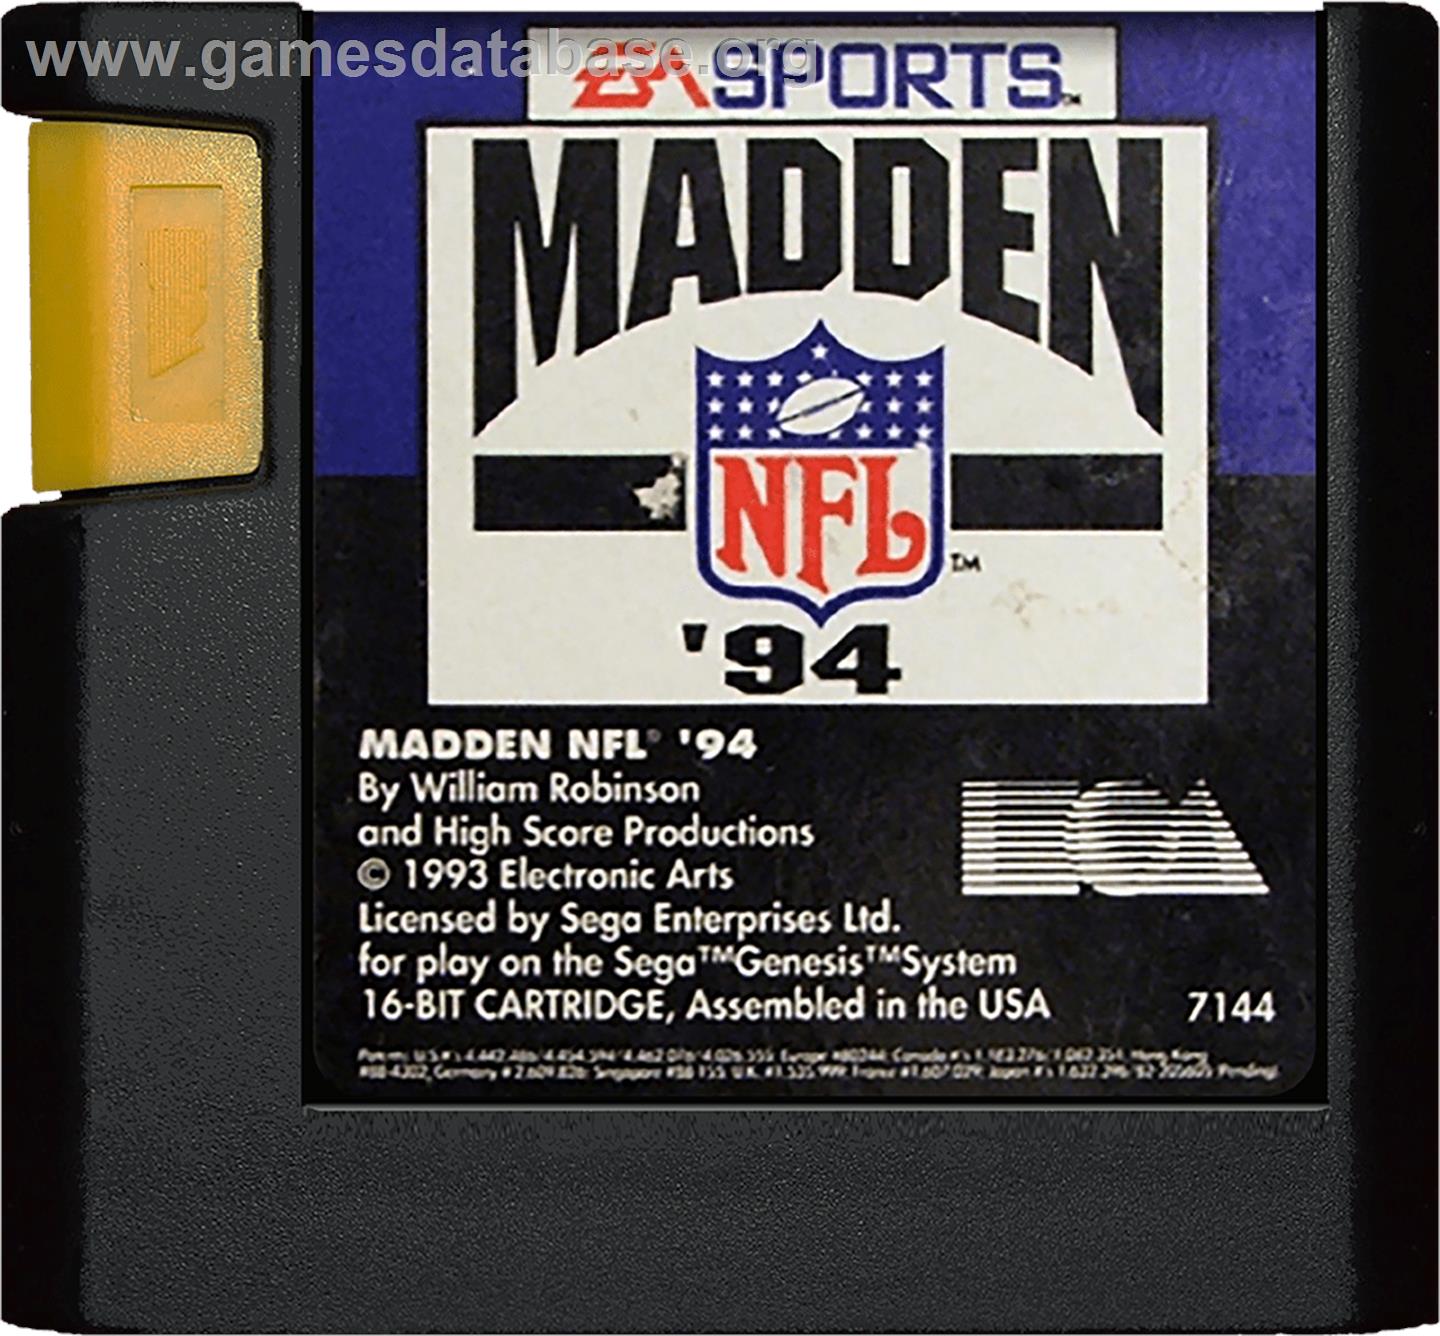 Madden NFL '94 - Sega Genesis - Artwork - Cartridge